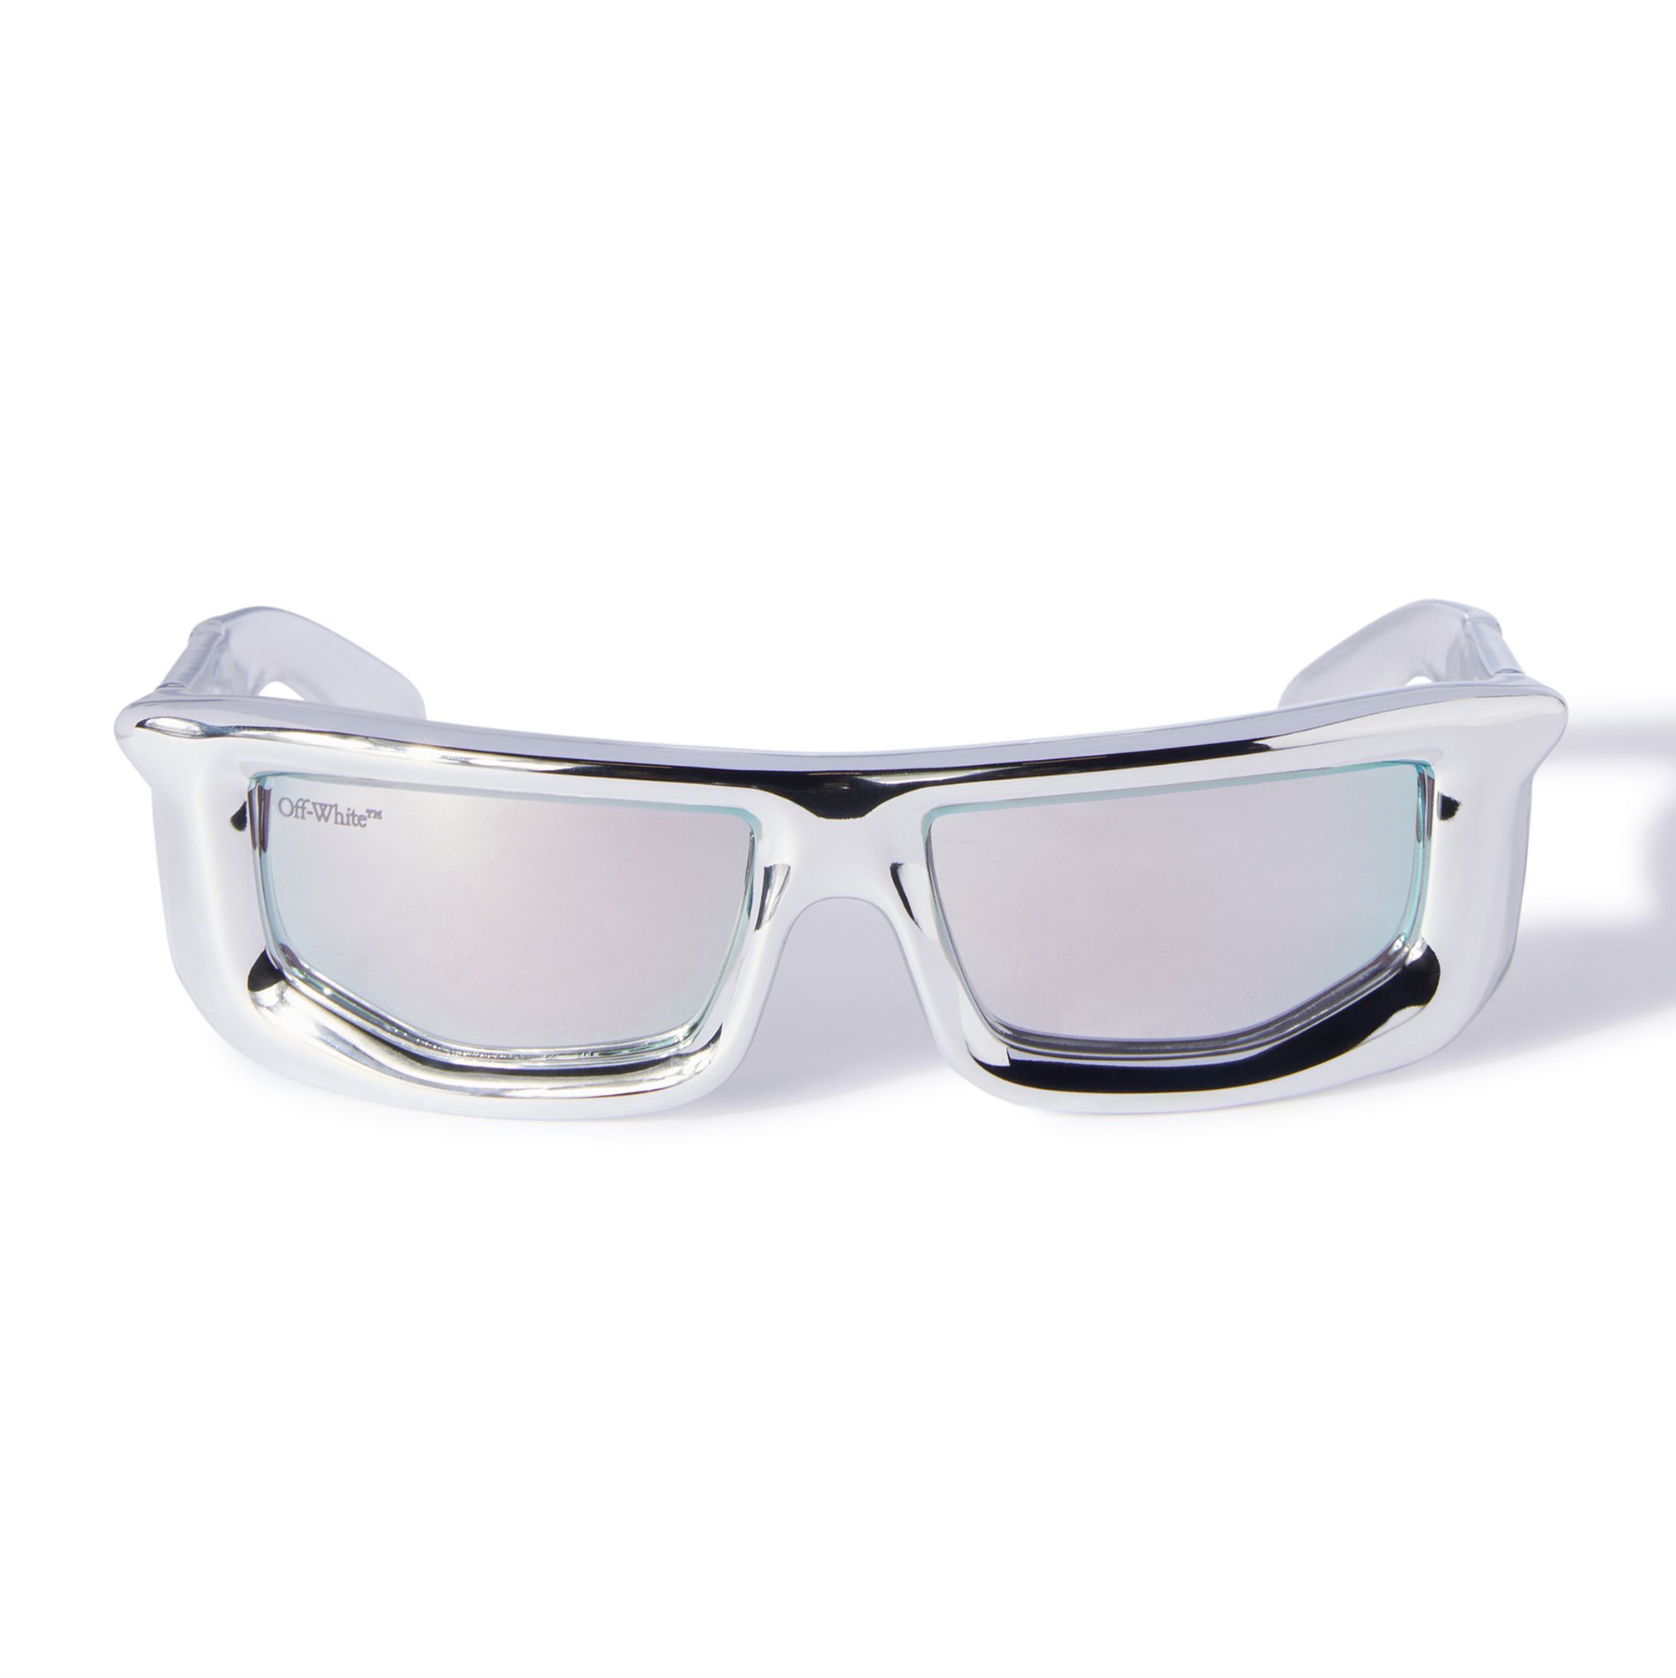 Off-White Volcanite Silver Sunglasses